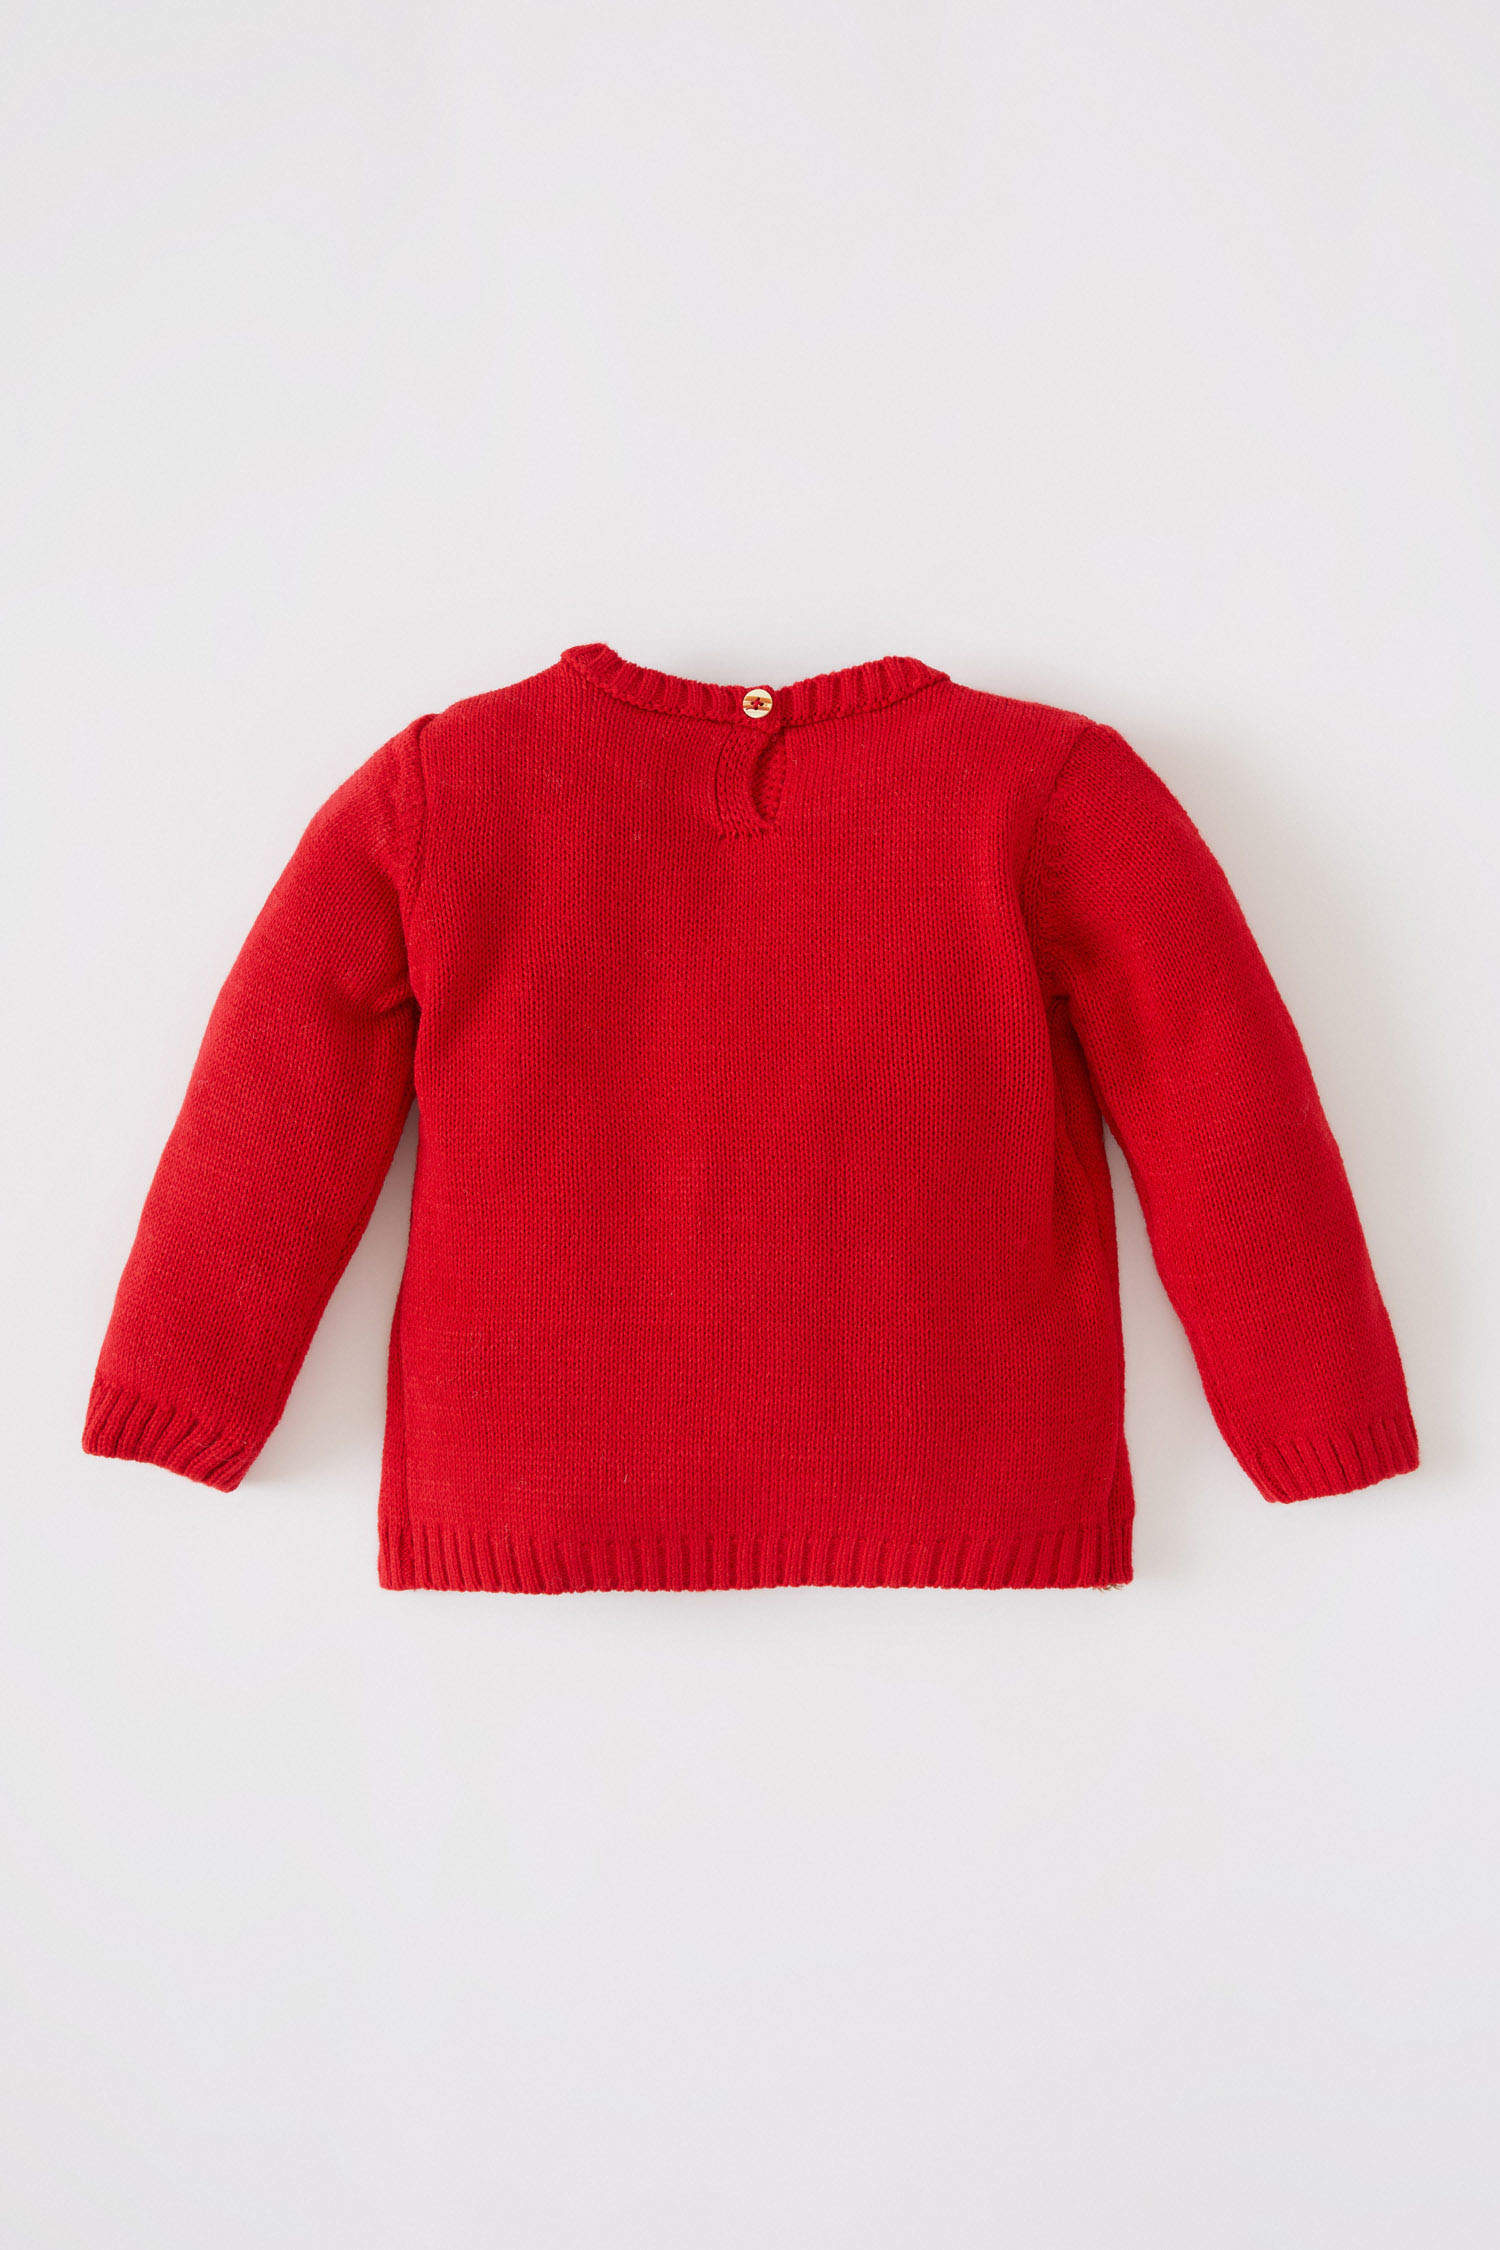 Facile à tricoter motif pour bébé fille ou garçon cardigan pullover. Pull Pull